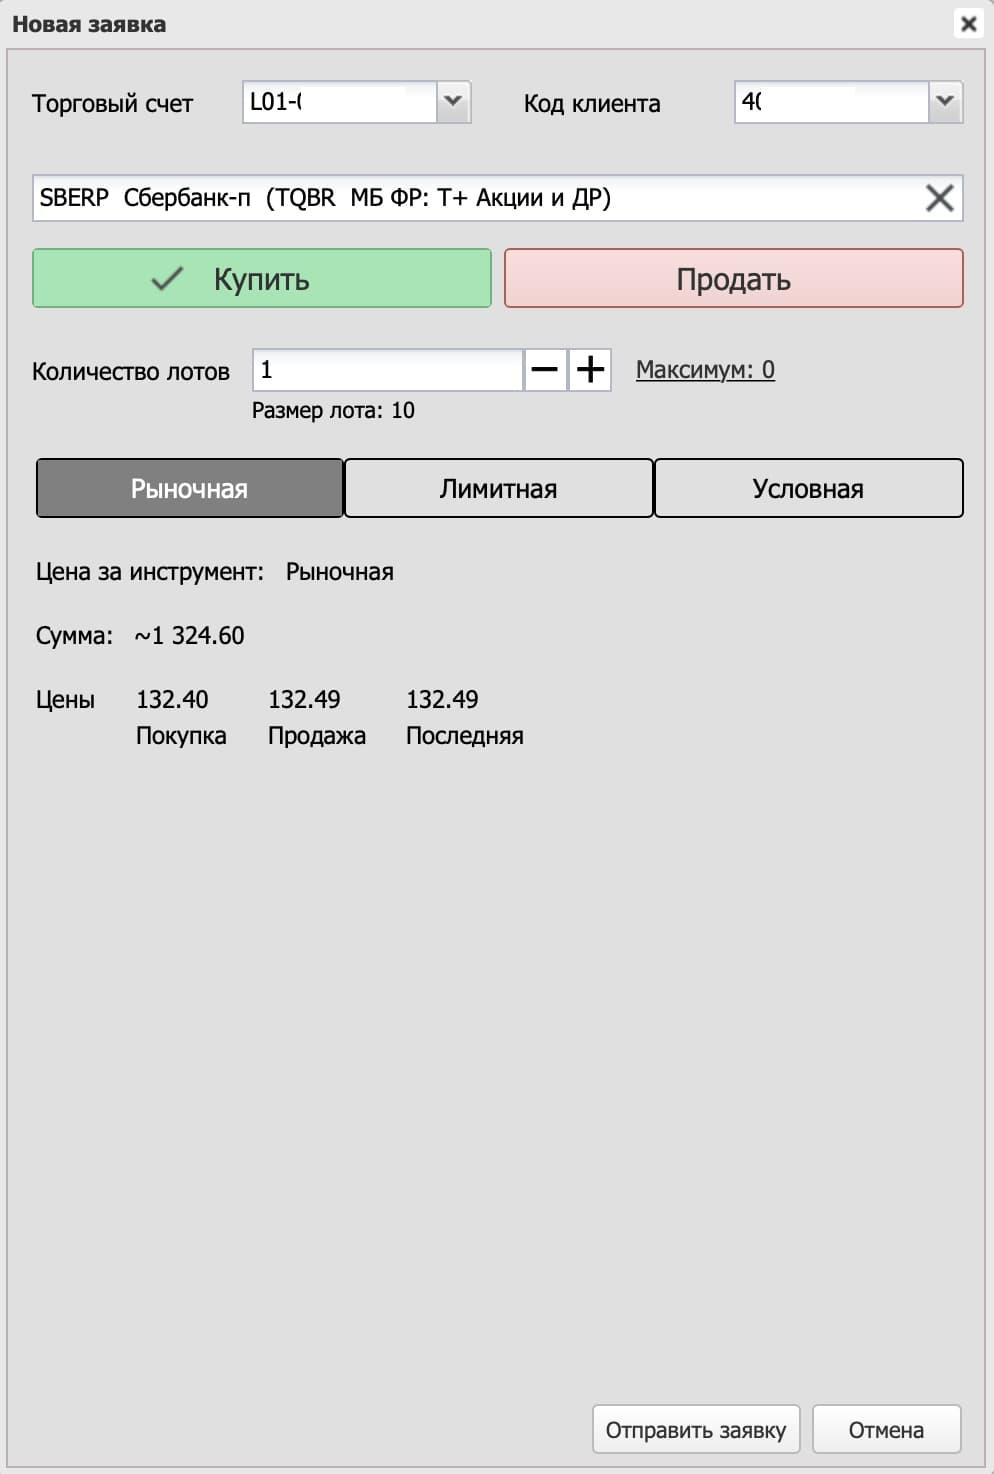 Пример заполнения заявки на покупку акций «СберБанка».